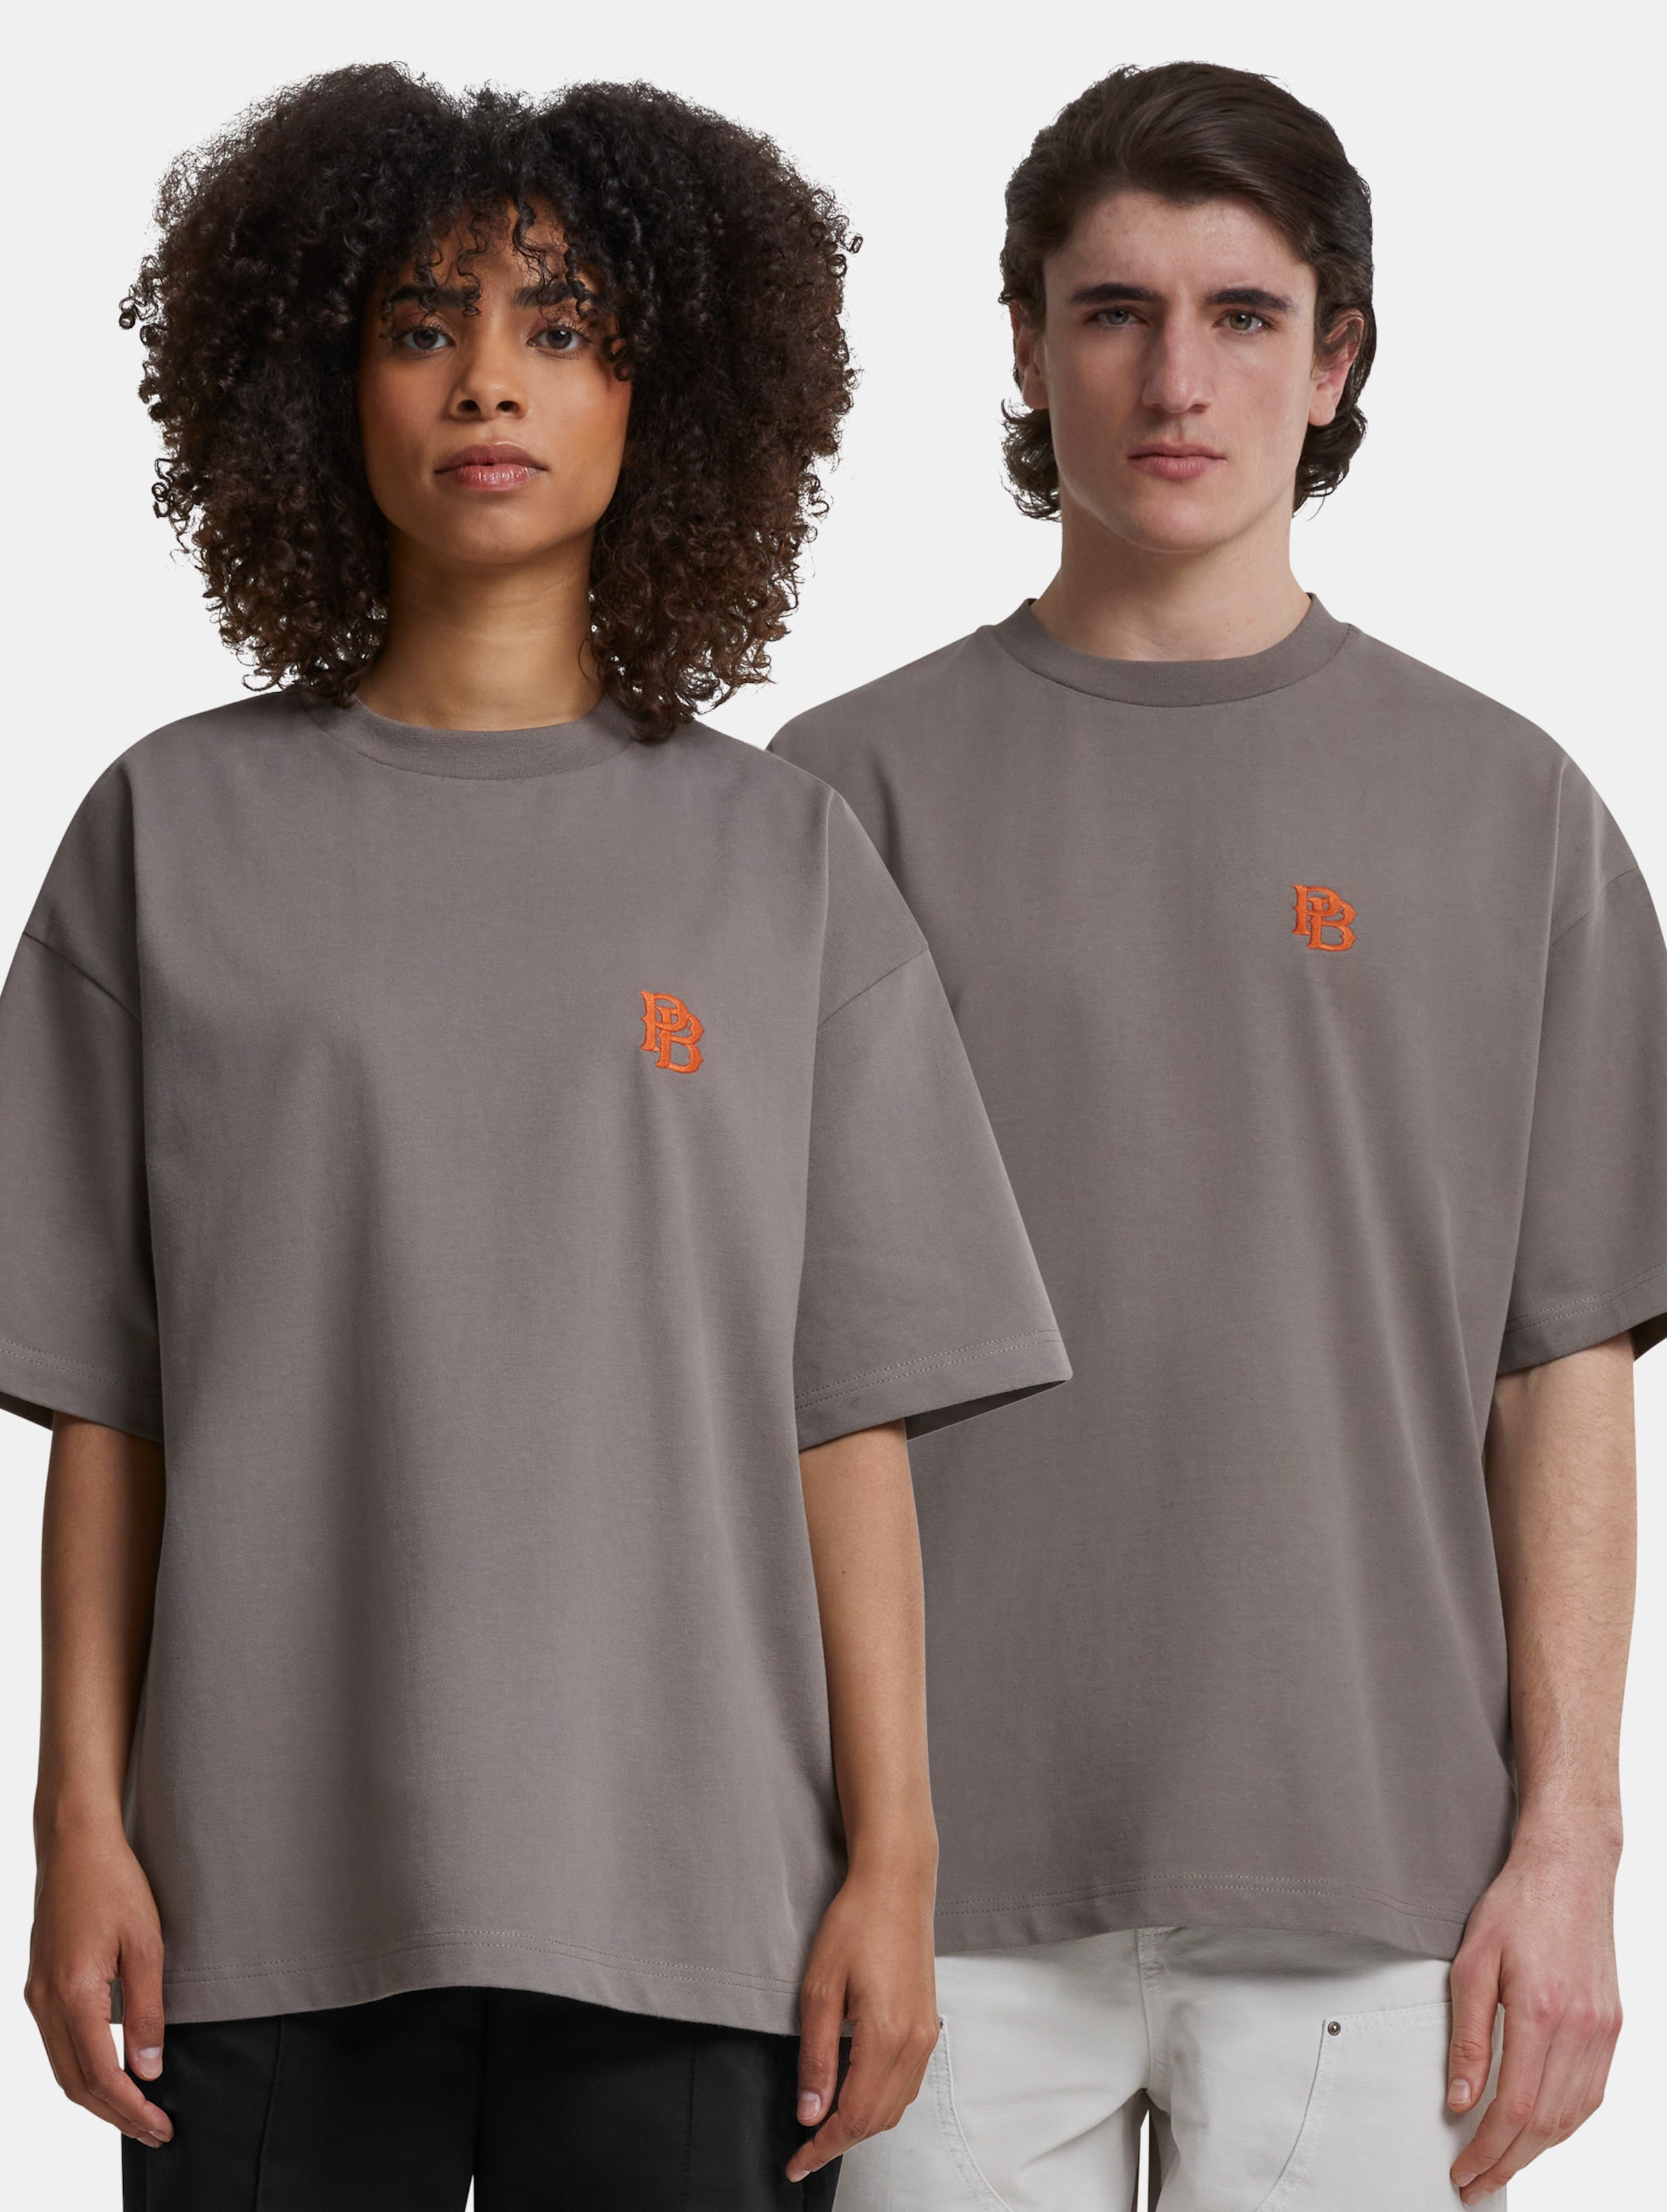 Prohibited Pitch T-Shirts Frauen,Männer,Unisex op kleur grijs, Maat XXL